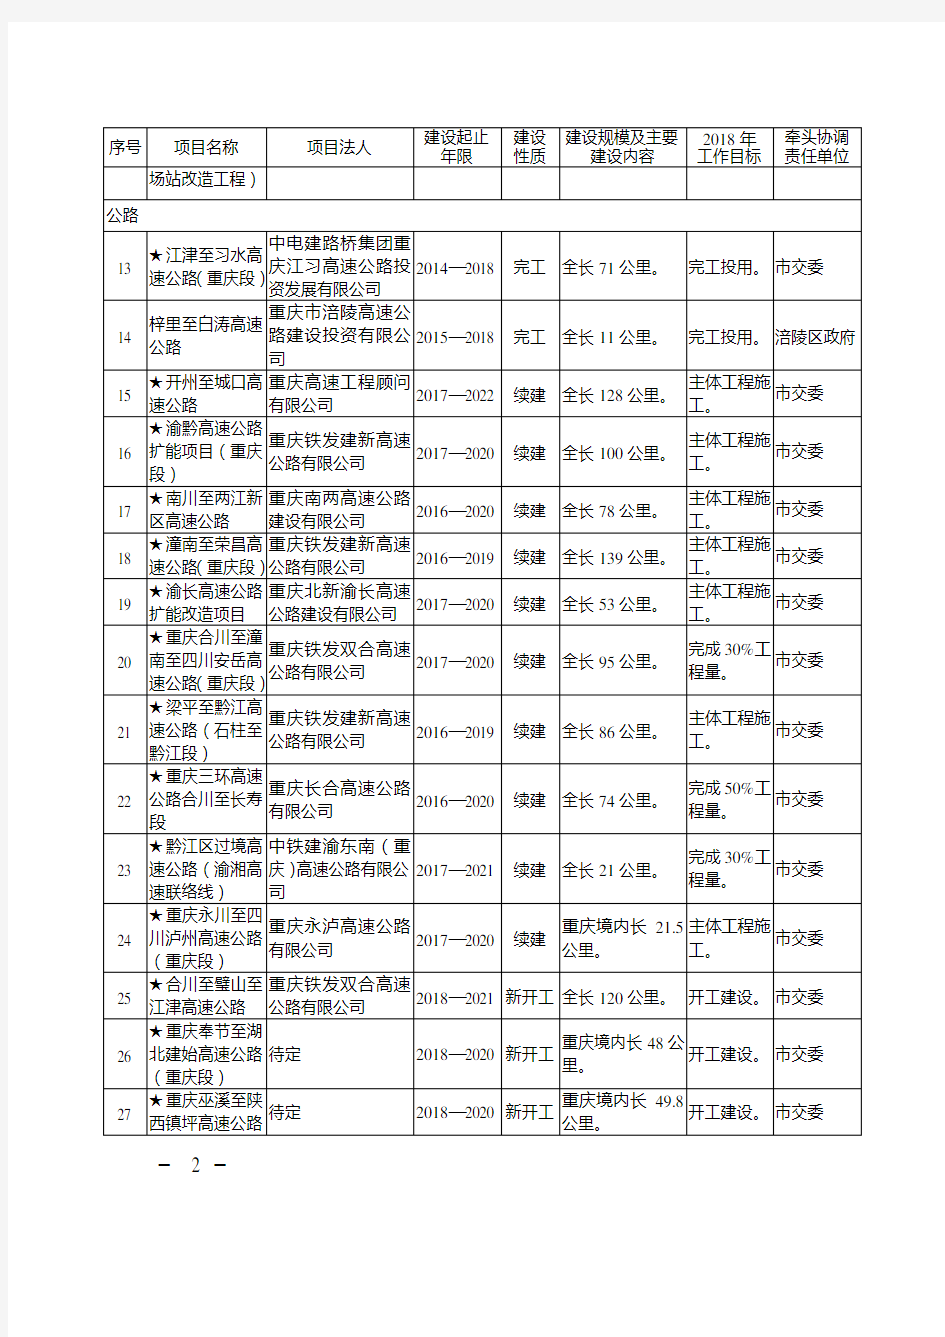 重庆市2018年市级重点年度建设项目名单